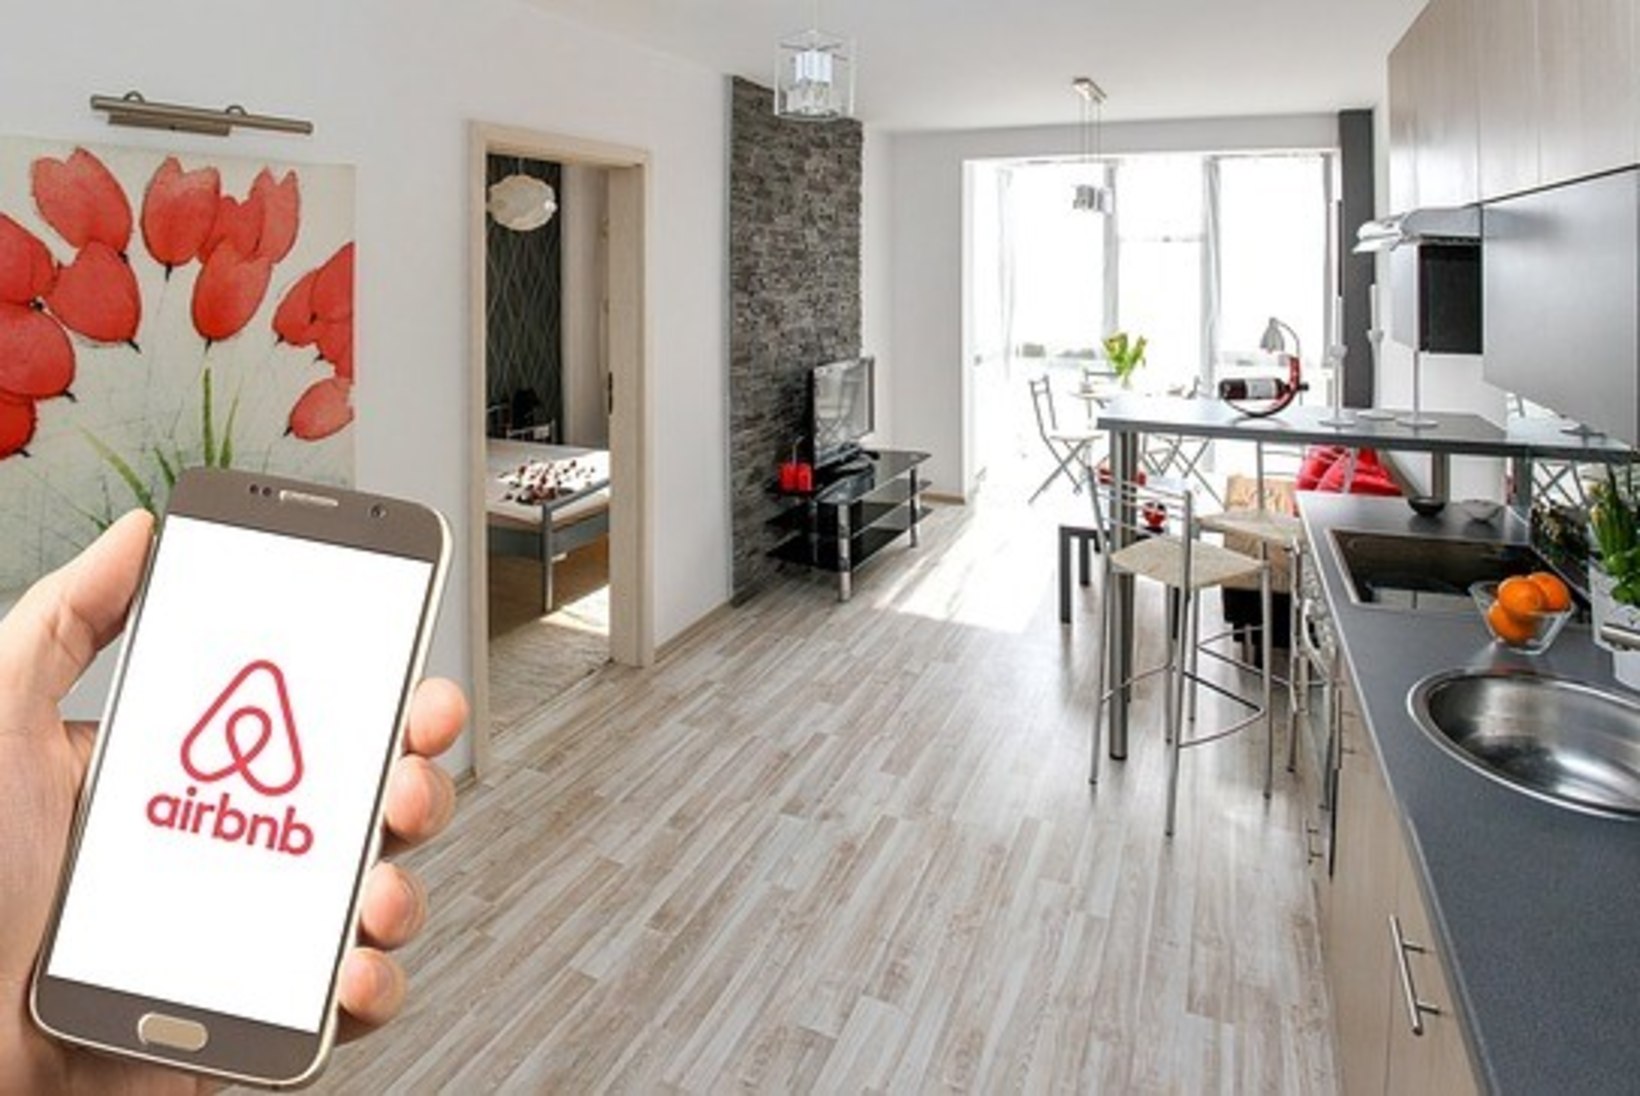 Airbnb plaanib järgmise aasta detsembriks kõik oma majutuskohad üle kontrollida